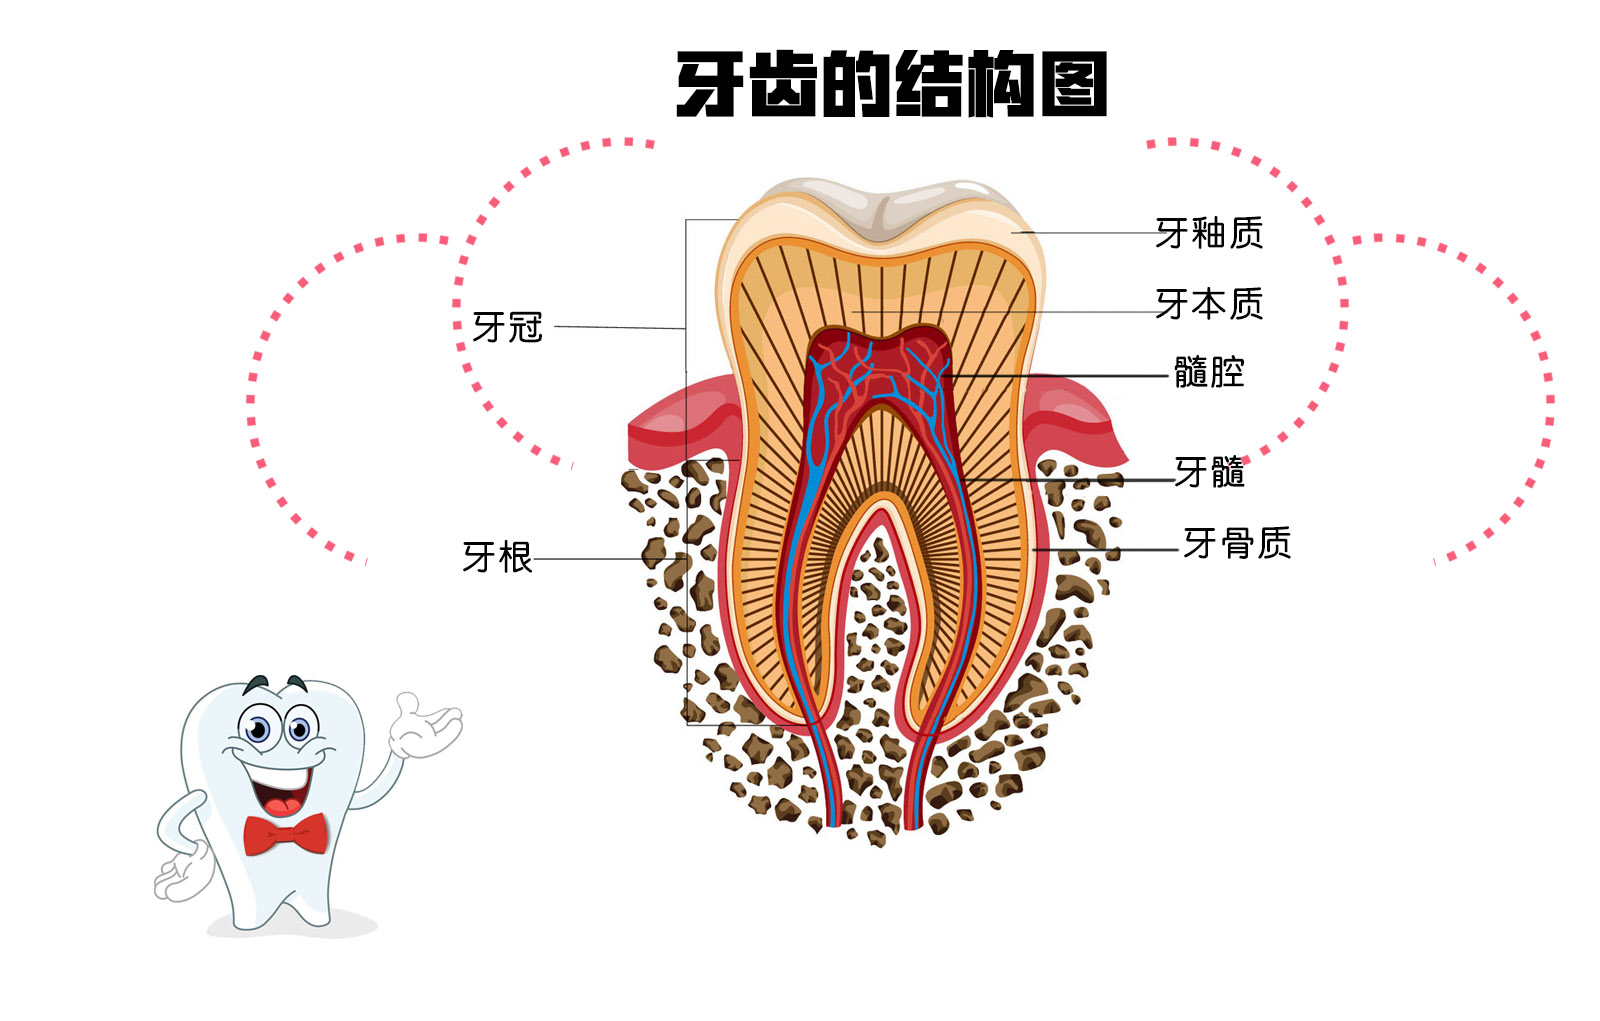 乳牙结构示意图图片